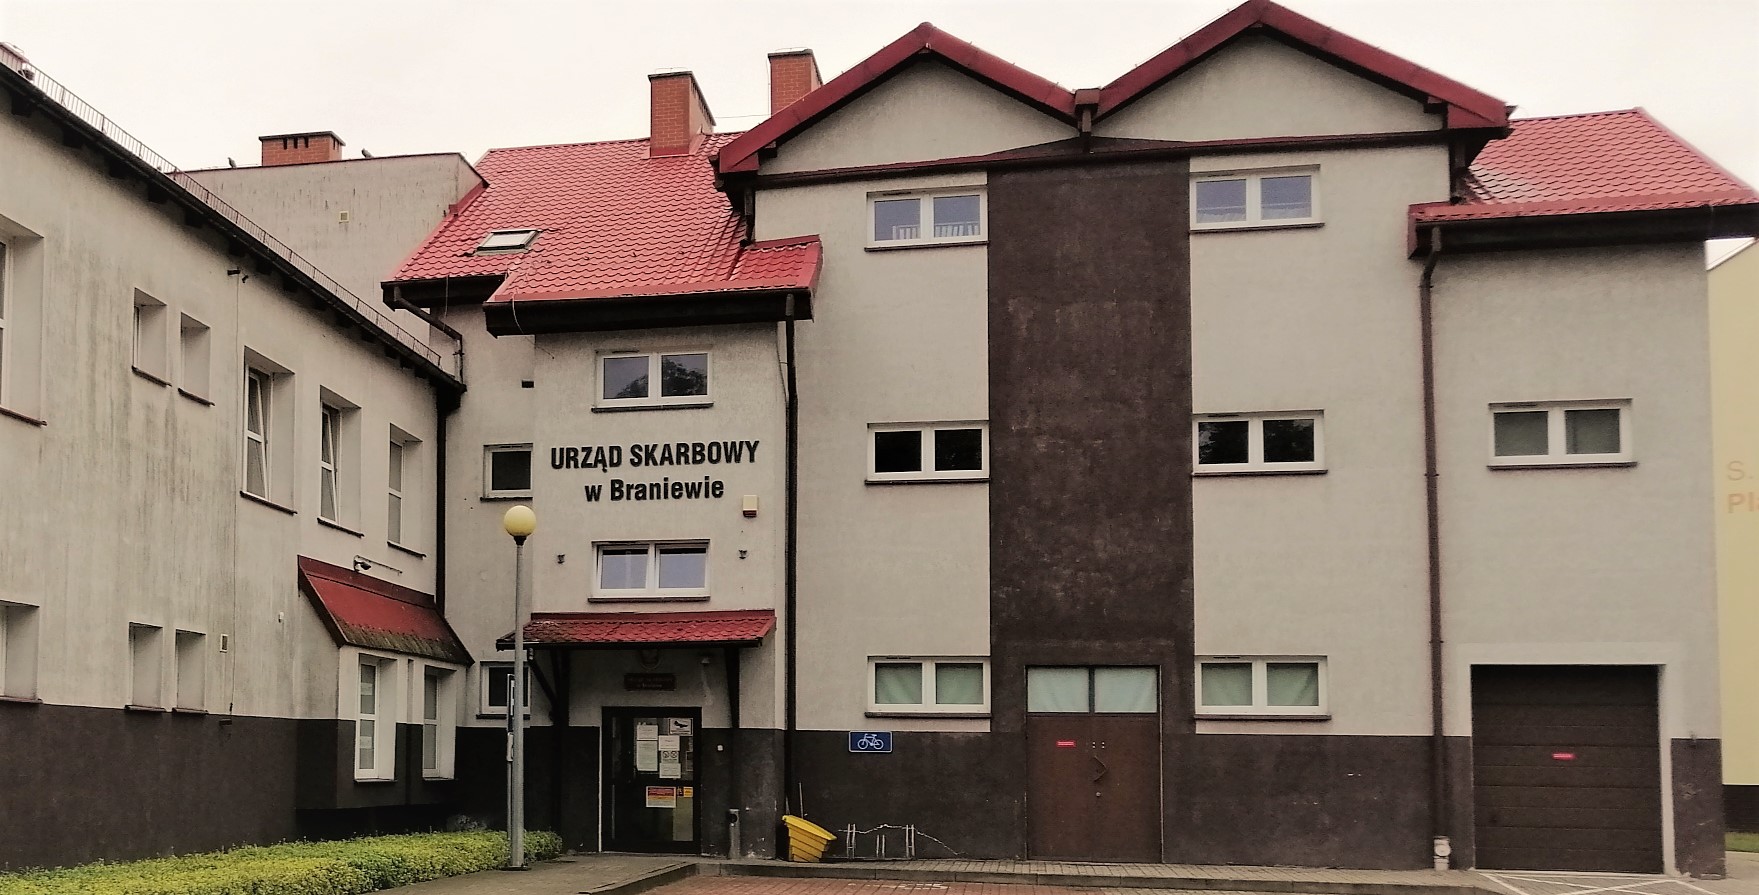 Fasada budynku, w którym znajduje się siedziba Urzędu Skarbowego w Braniewie.